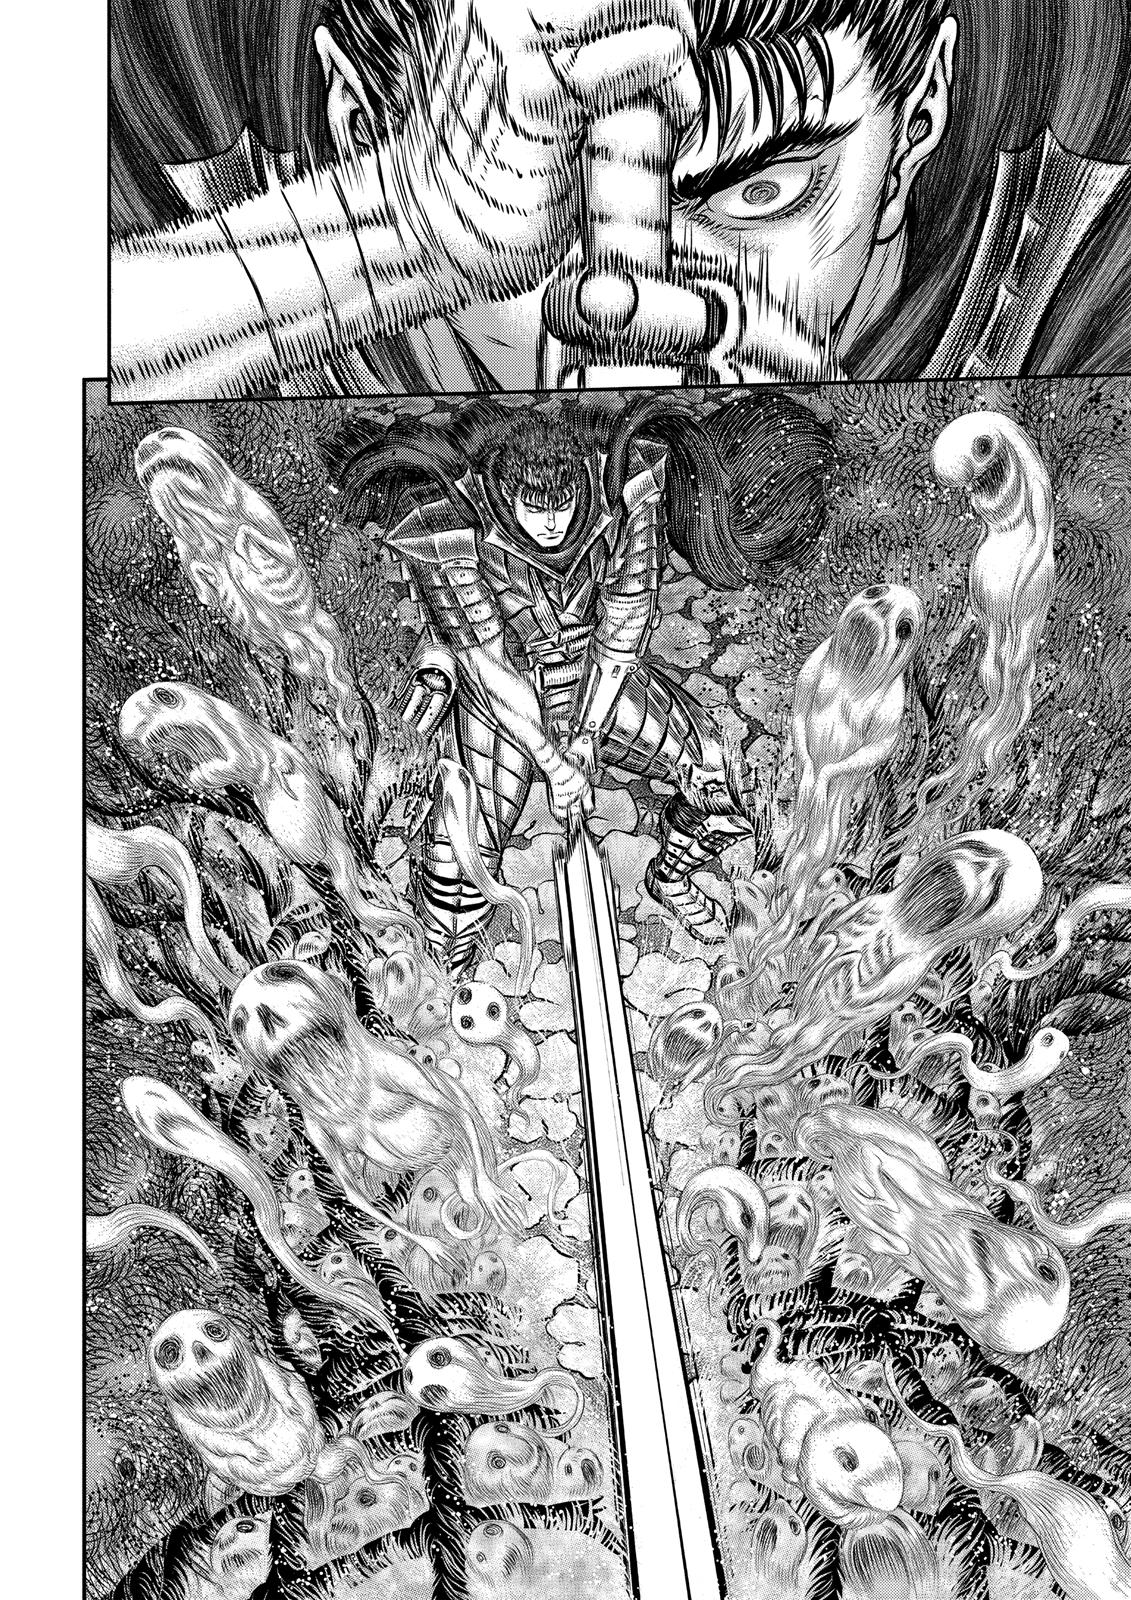 Berserk Manga Chapter 343 image 30